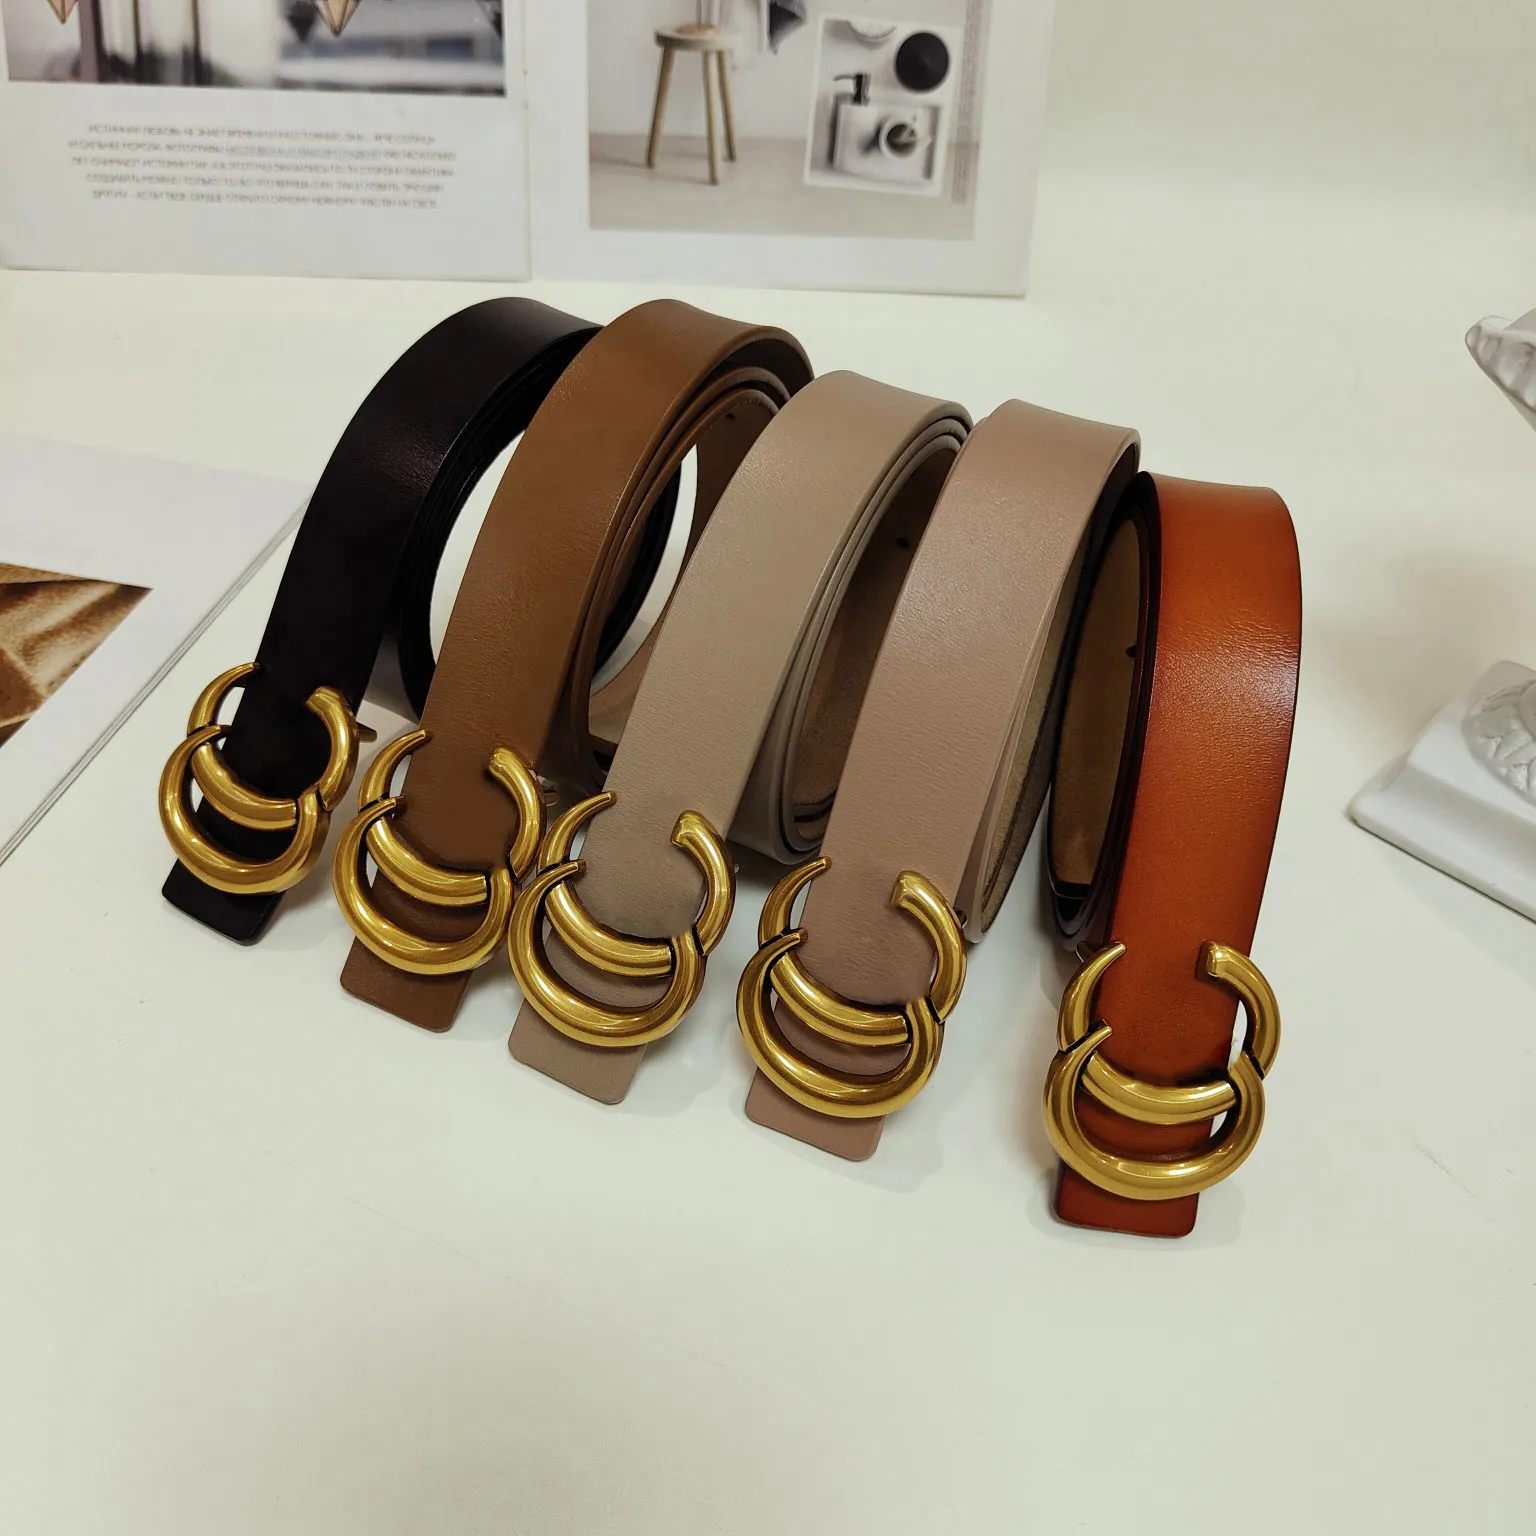 designer belt luxury belt designer belts for women mens belt standard length gold letters fine leather belt fashion classic checkered cool